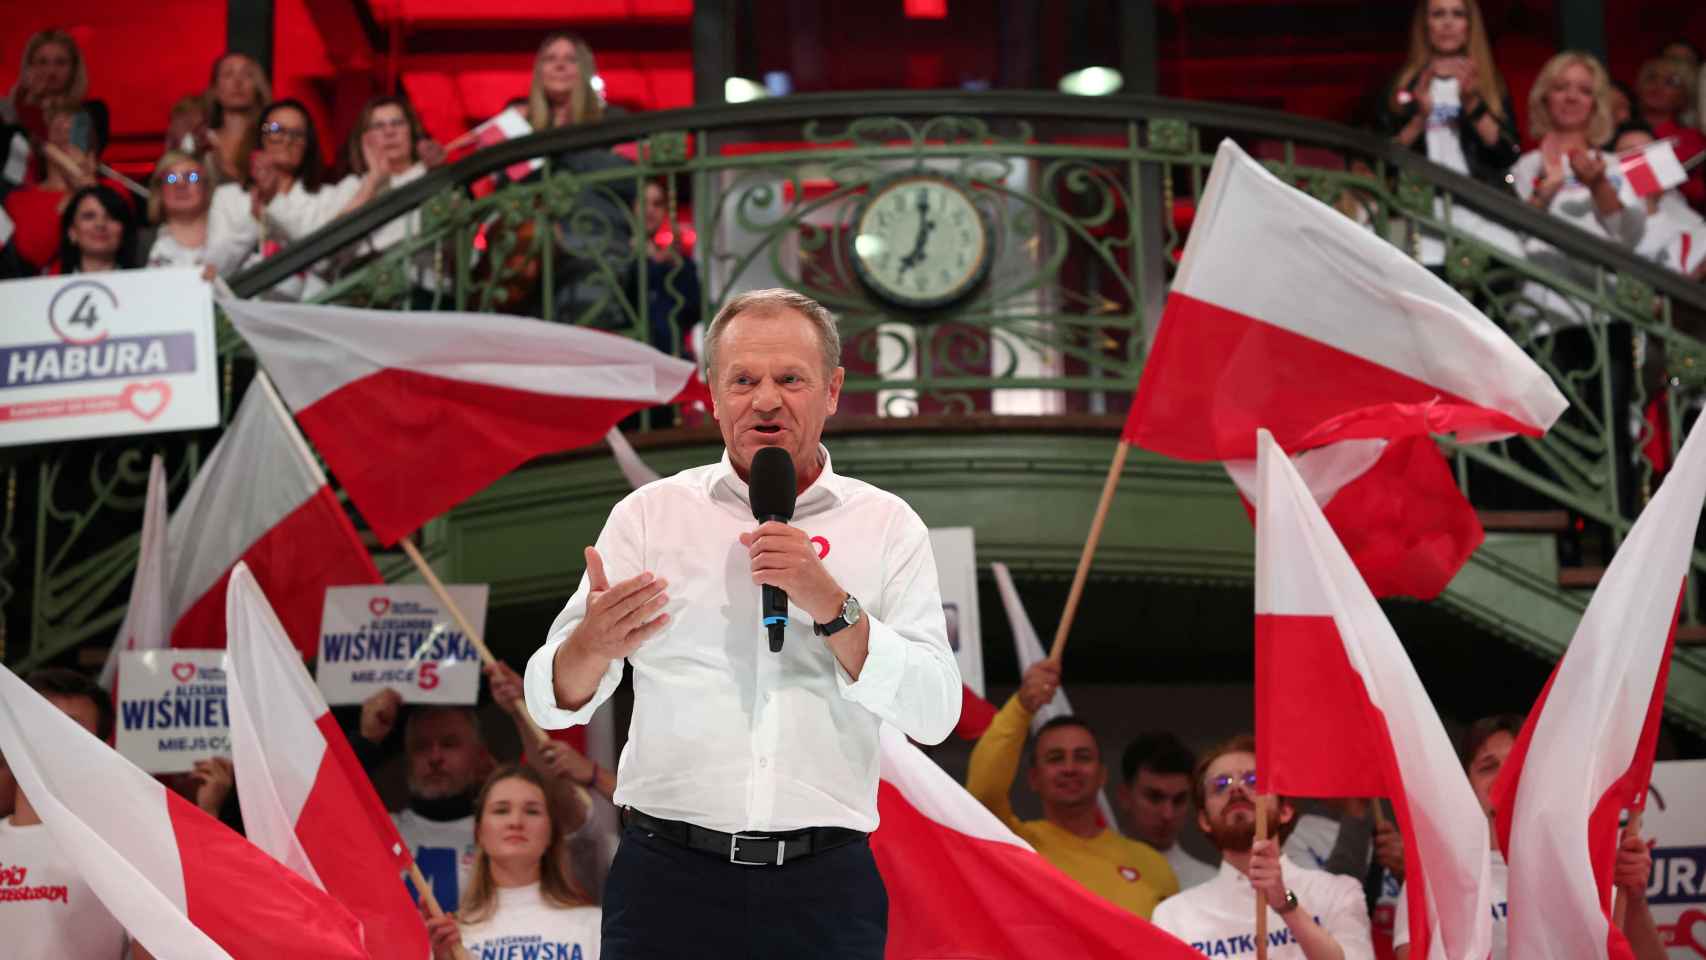 El candidato de Plataforma Cívica, Donald Tusk, durante un acto electoral